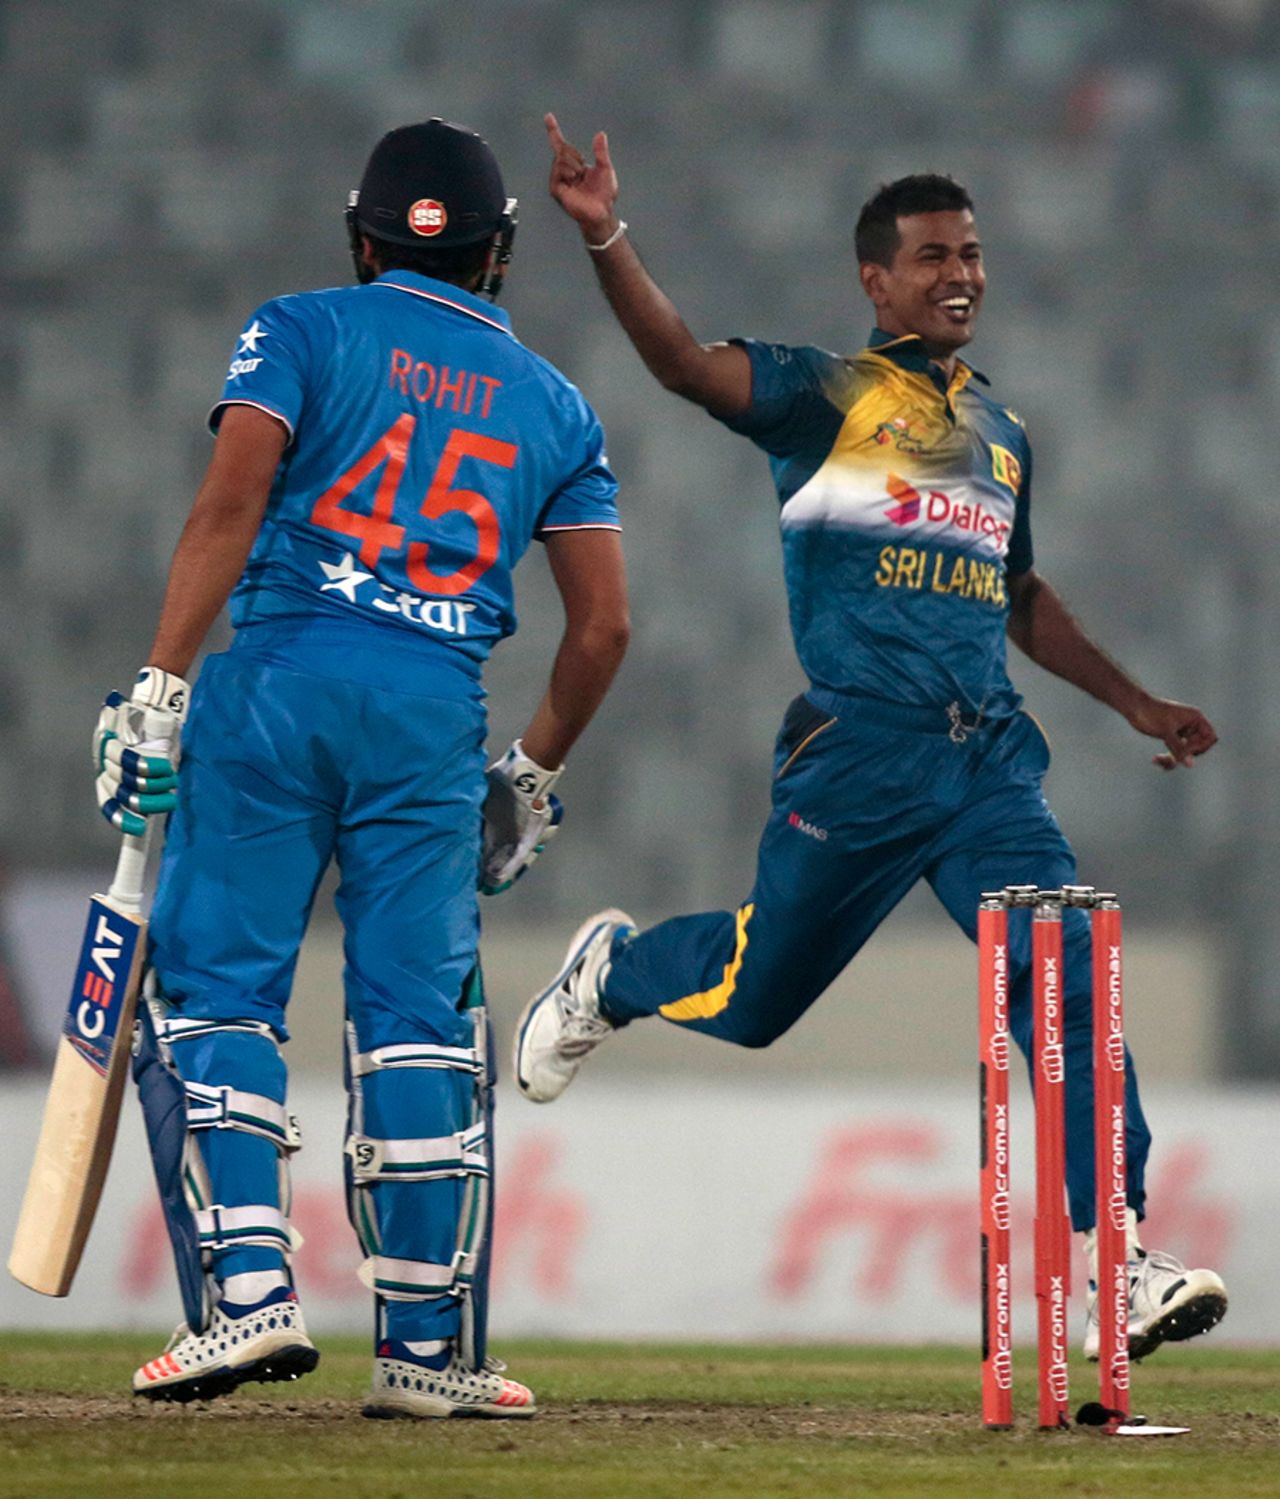 Rohit Sharma was caught at slip off Nuwan Kulasekara's bowling, India v Sri Lanka, Asia Cup 2016, Mirpur, March 1, 2016